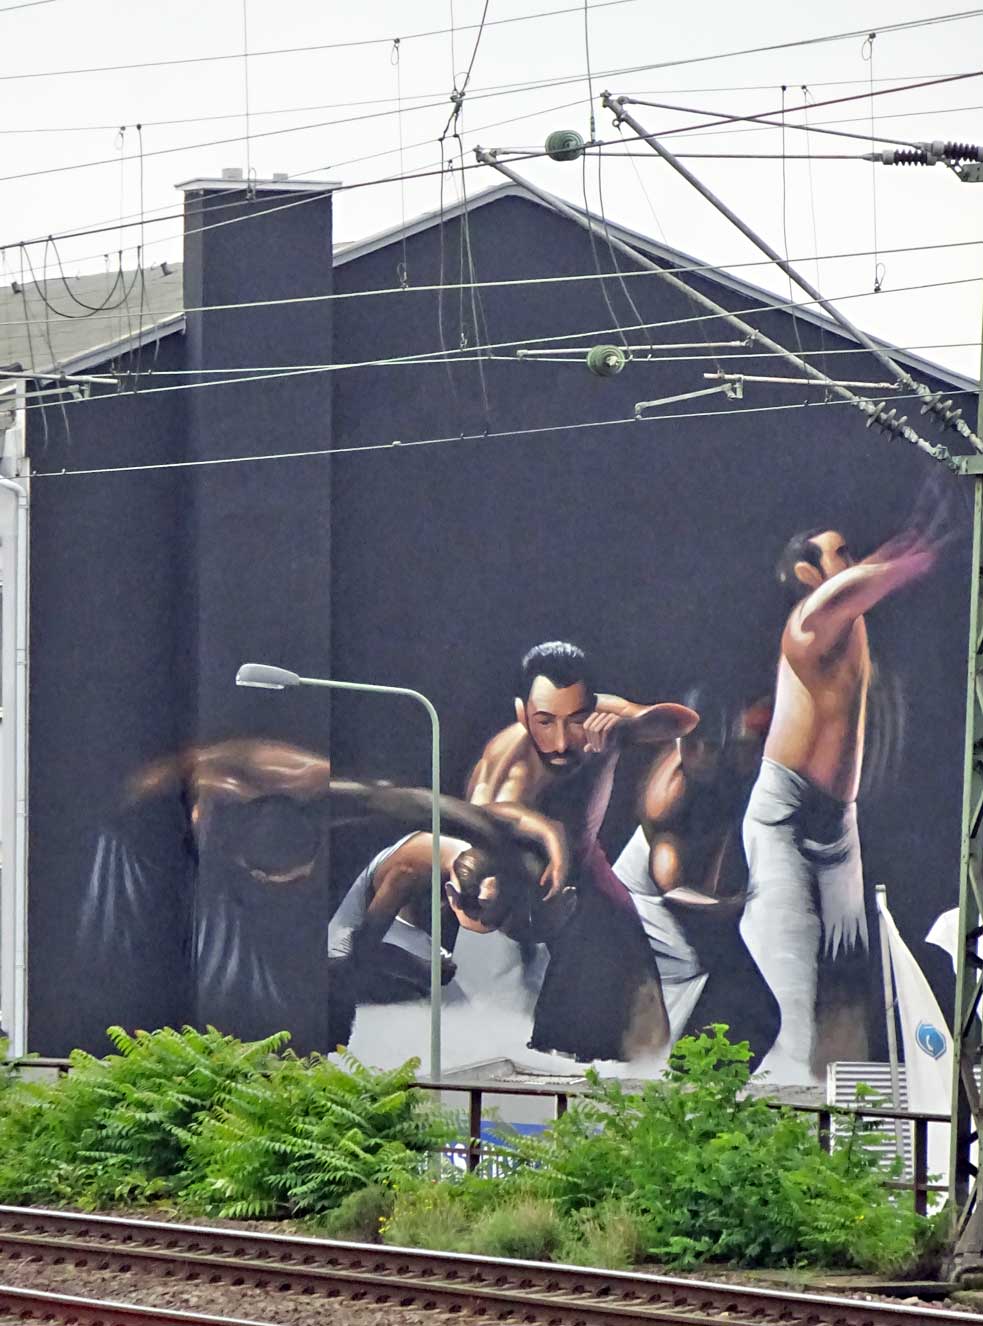 Streetart-Fotografie in Frankfurt - Schwarze Wand mit oberkörperfreie Männer